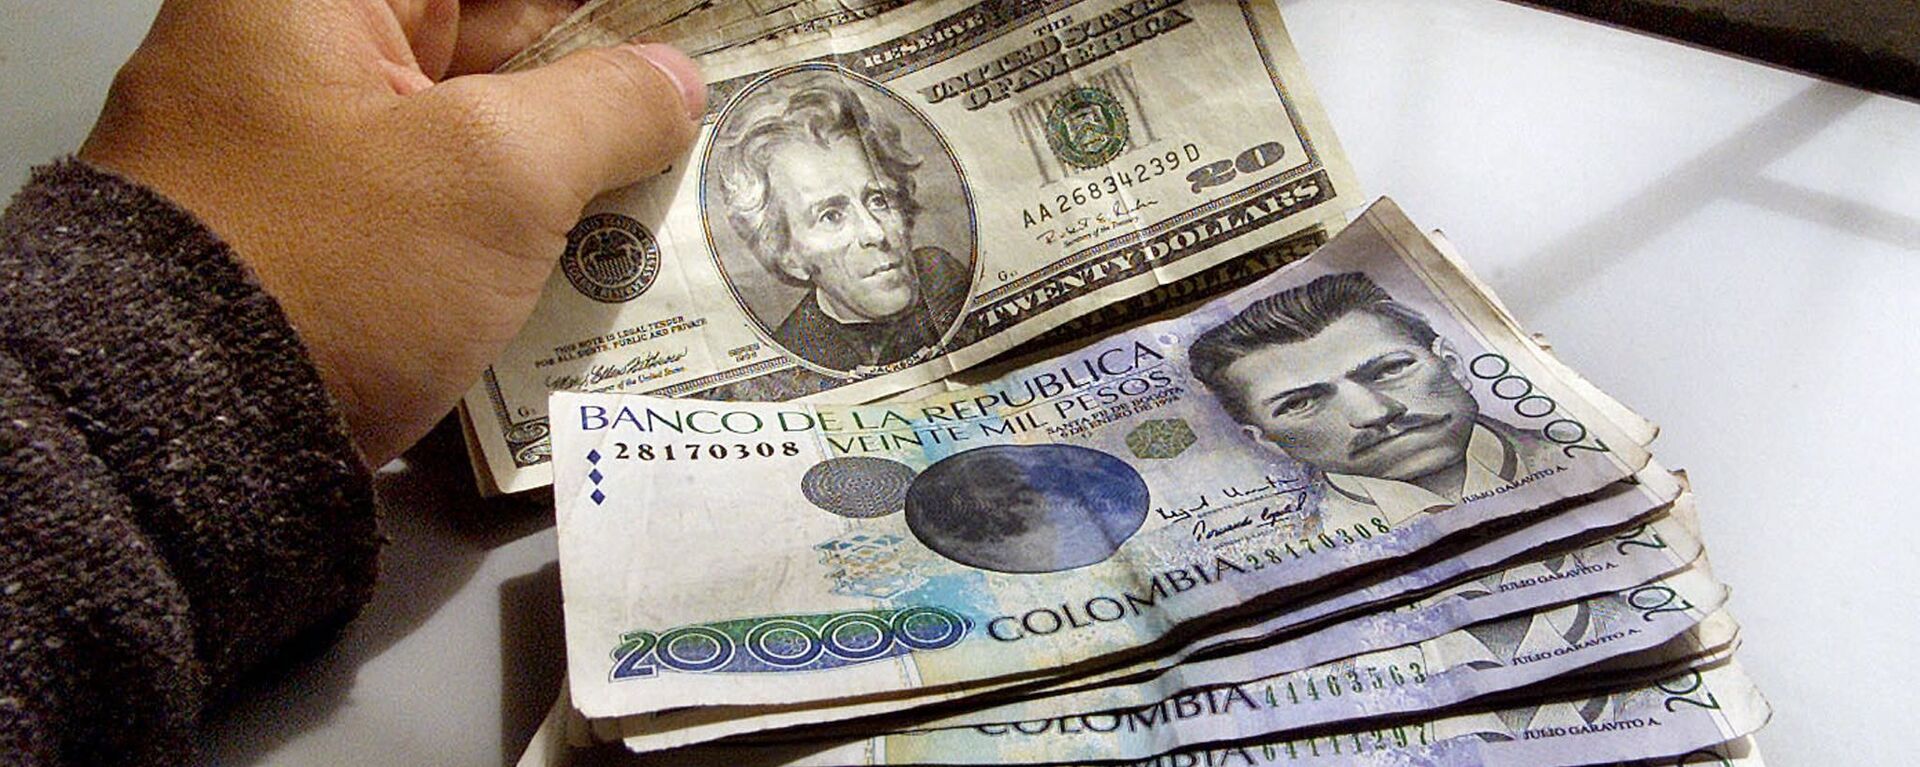 Pesos colombianos y dólares - Sputnik Mundo, 1920, 04.02.2021